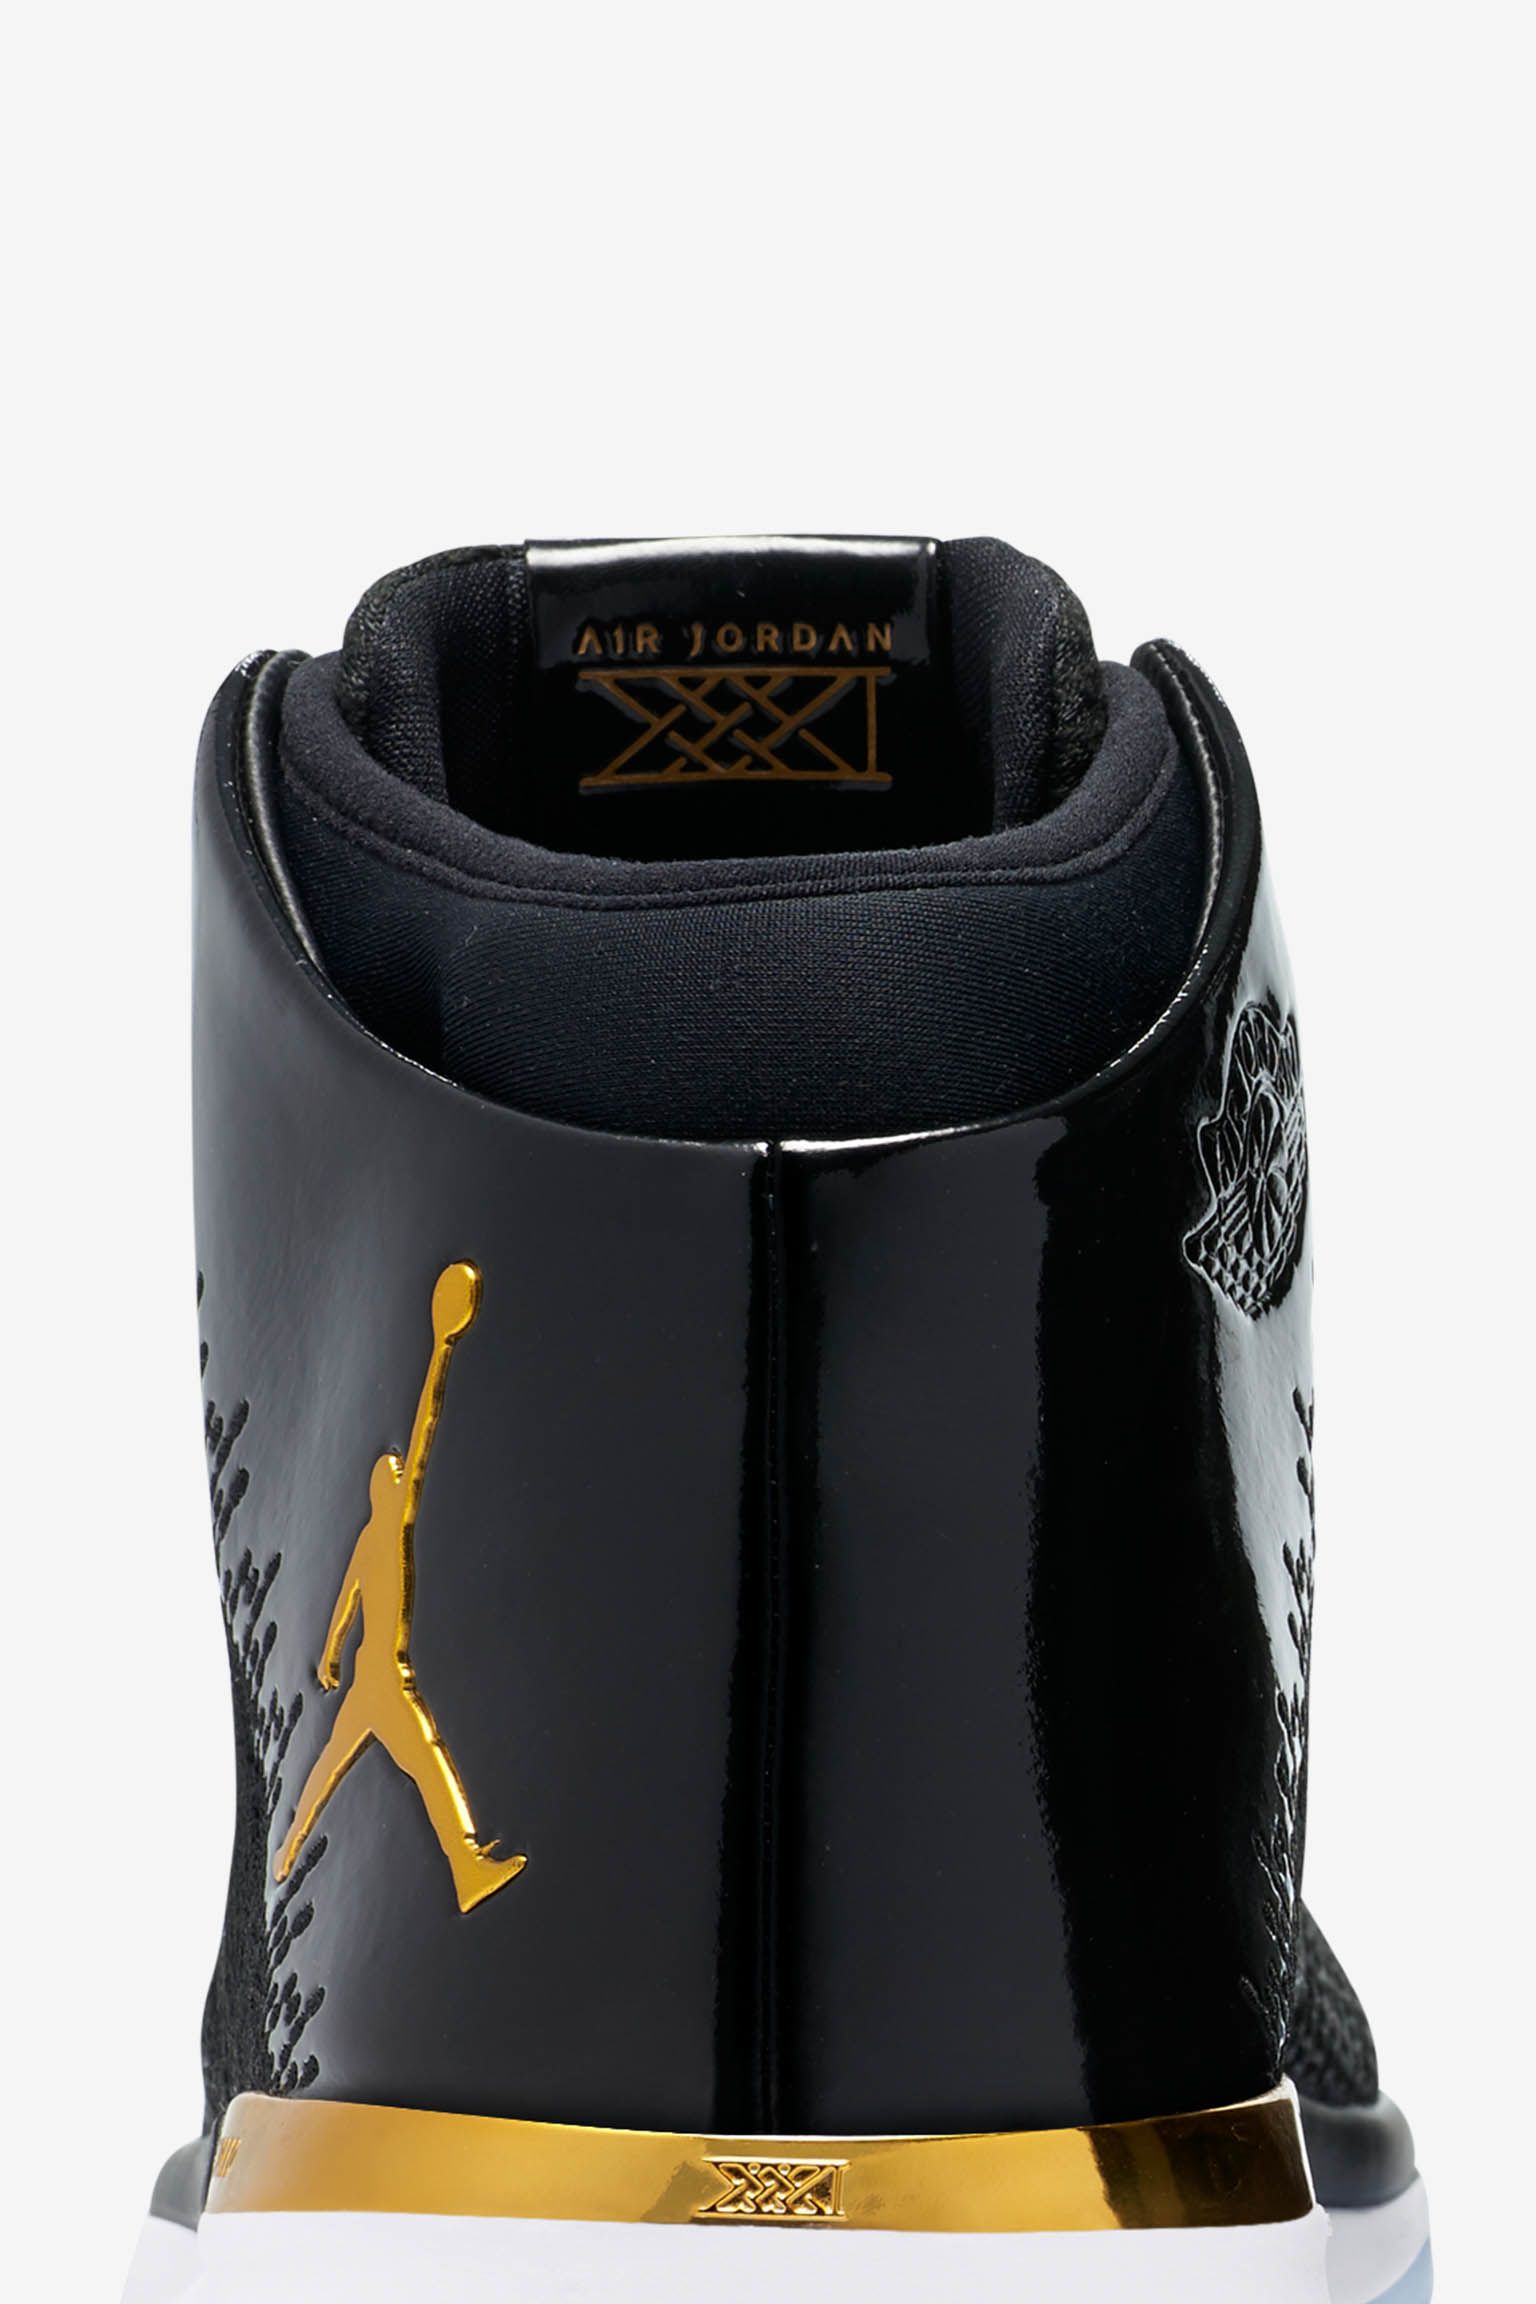 Air Jordan 31 Jordan Brand Classic East Release Date Nike Snkrs